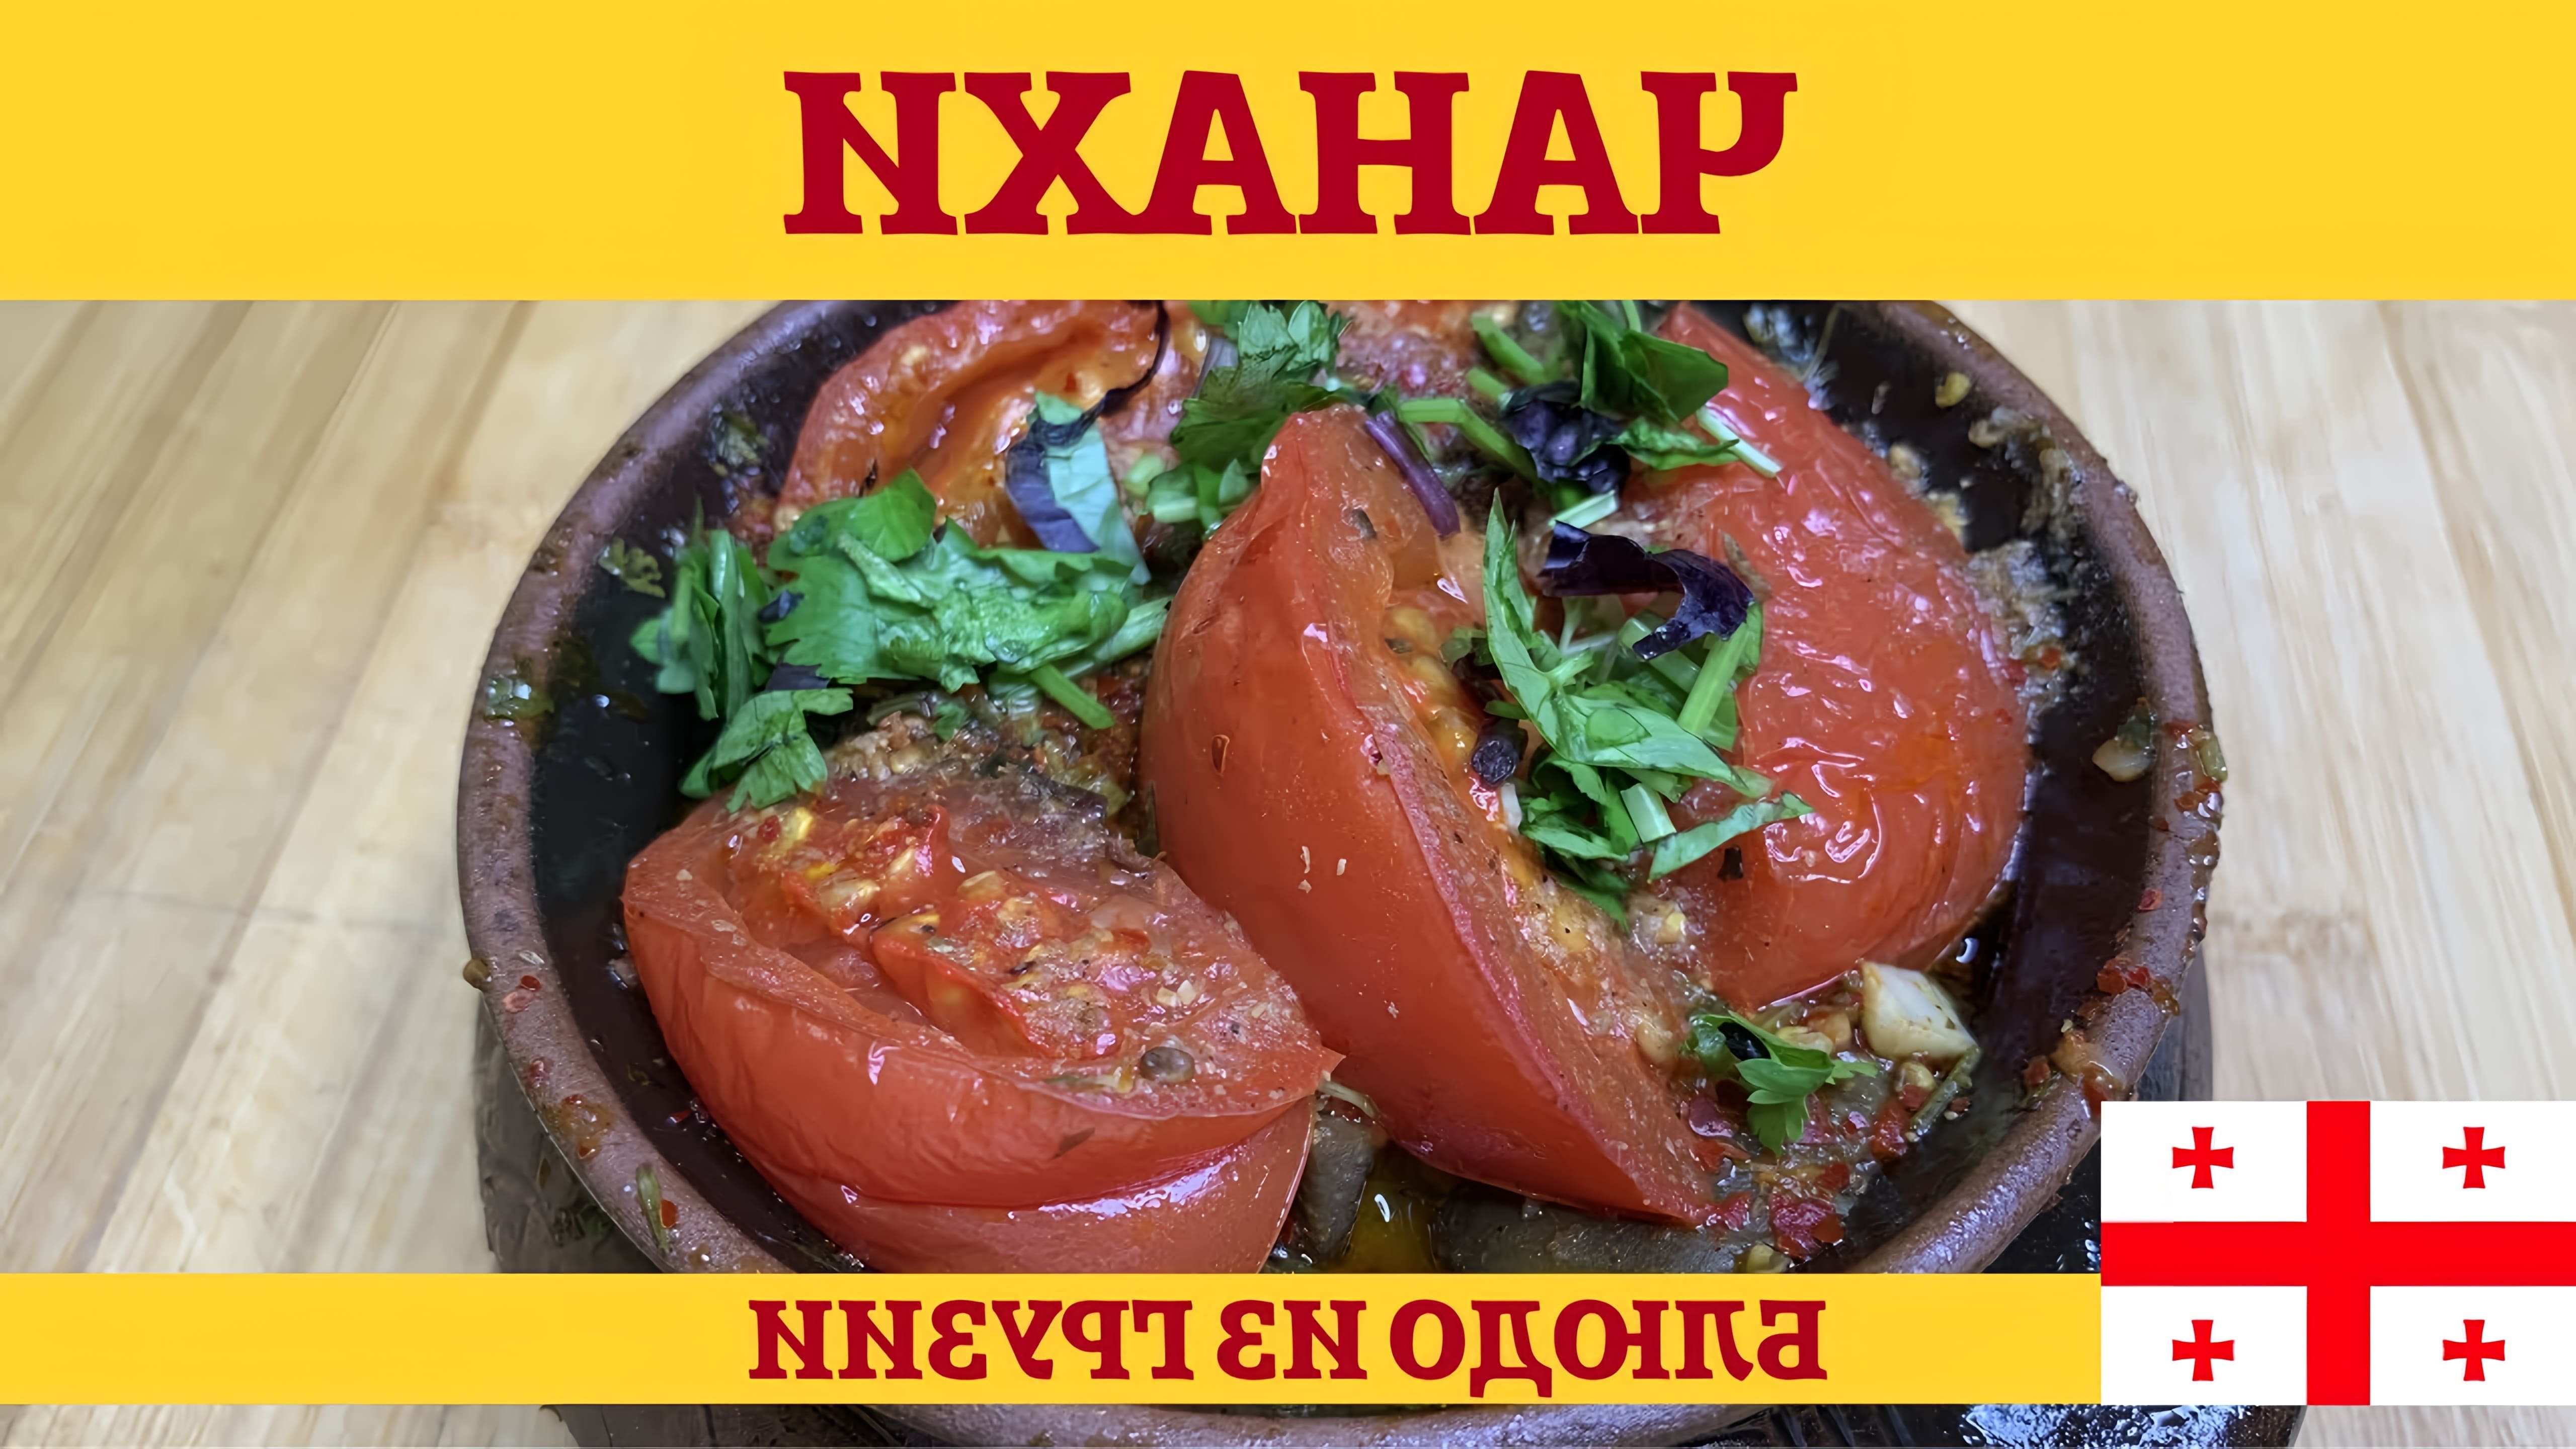 В этом видео демонстрируется процесс приготовления грузинского блюда "Чанахи" - жаркого из баранины с овощами в горшочках